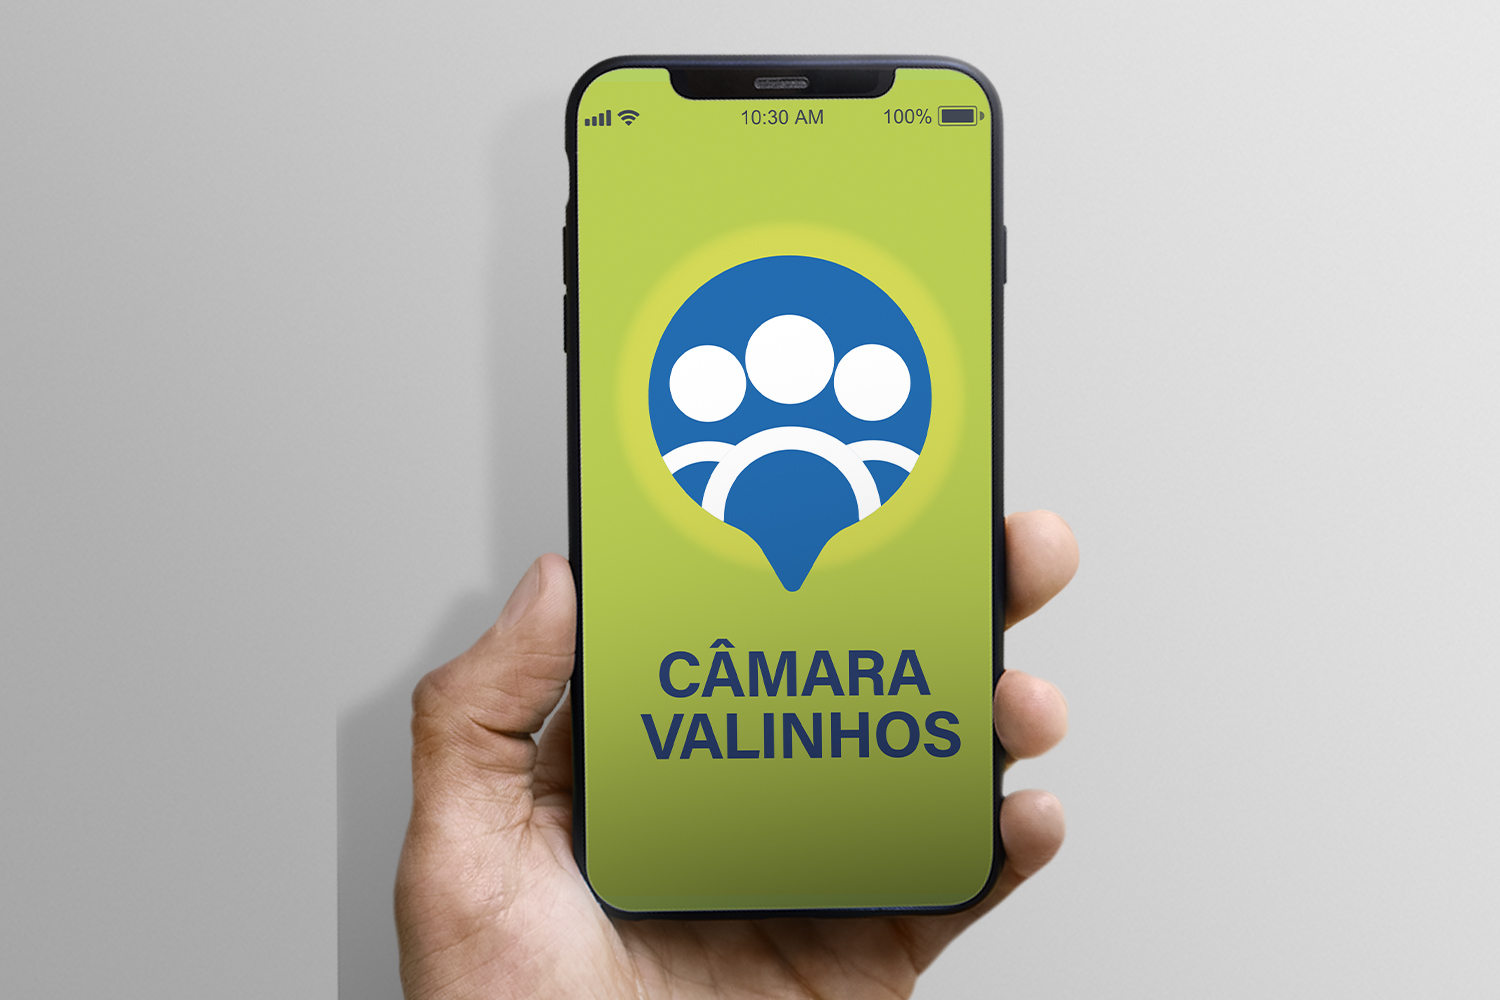 #PraCegoVer: Foto mostra mão segurando um celular. Na tela está o logotipo do aplicativo da Câmara, em que predominam as cores verde claro e azul.